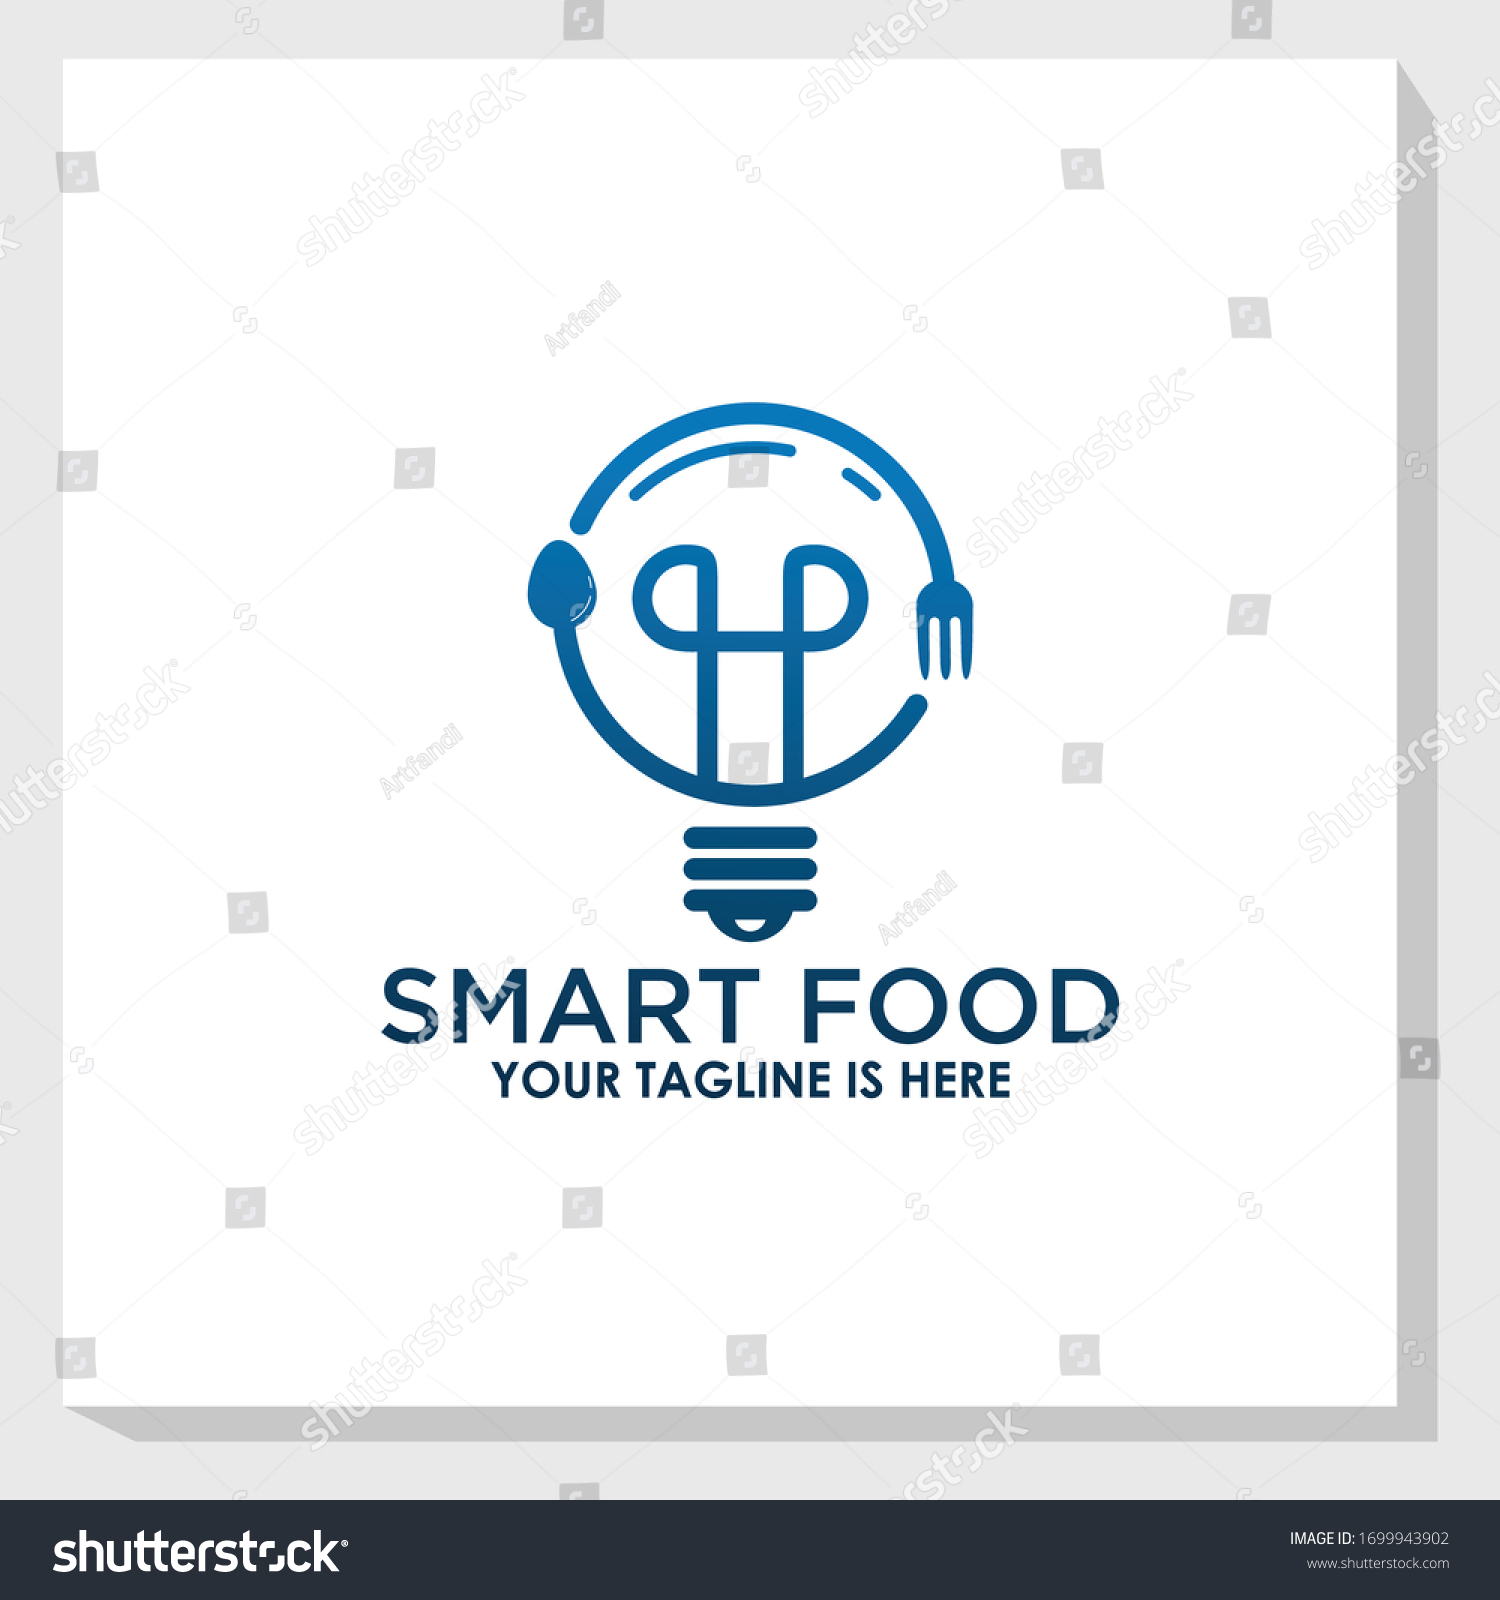 Download Logo Seluler Smart